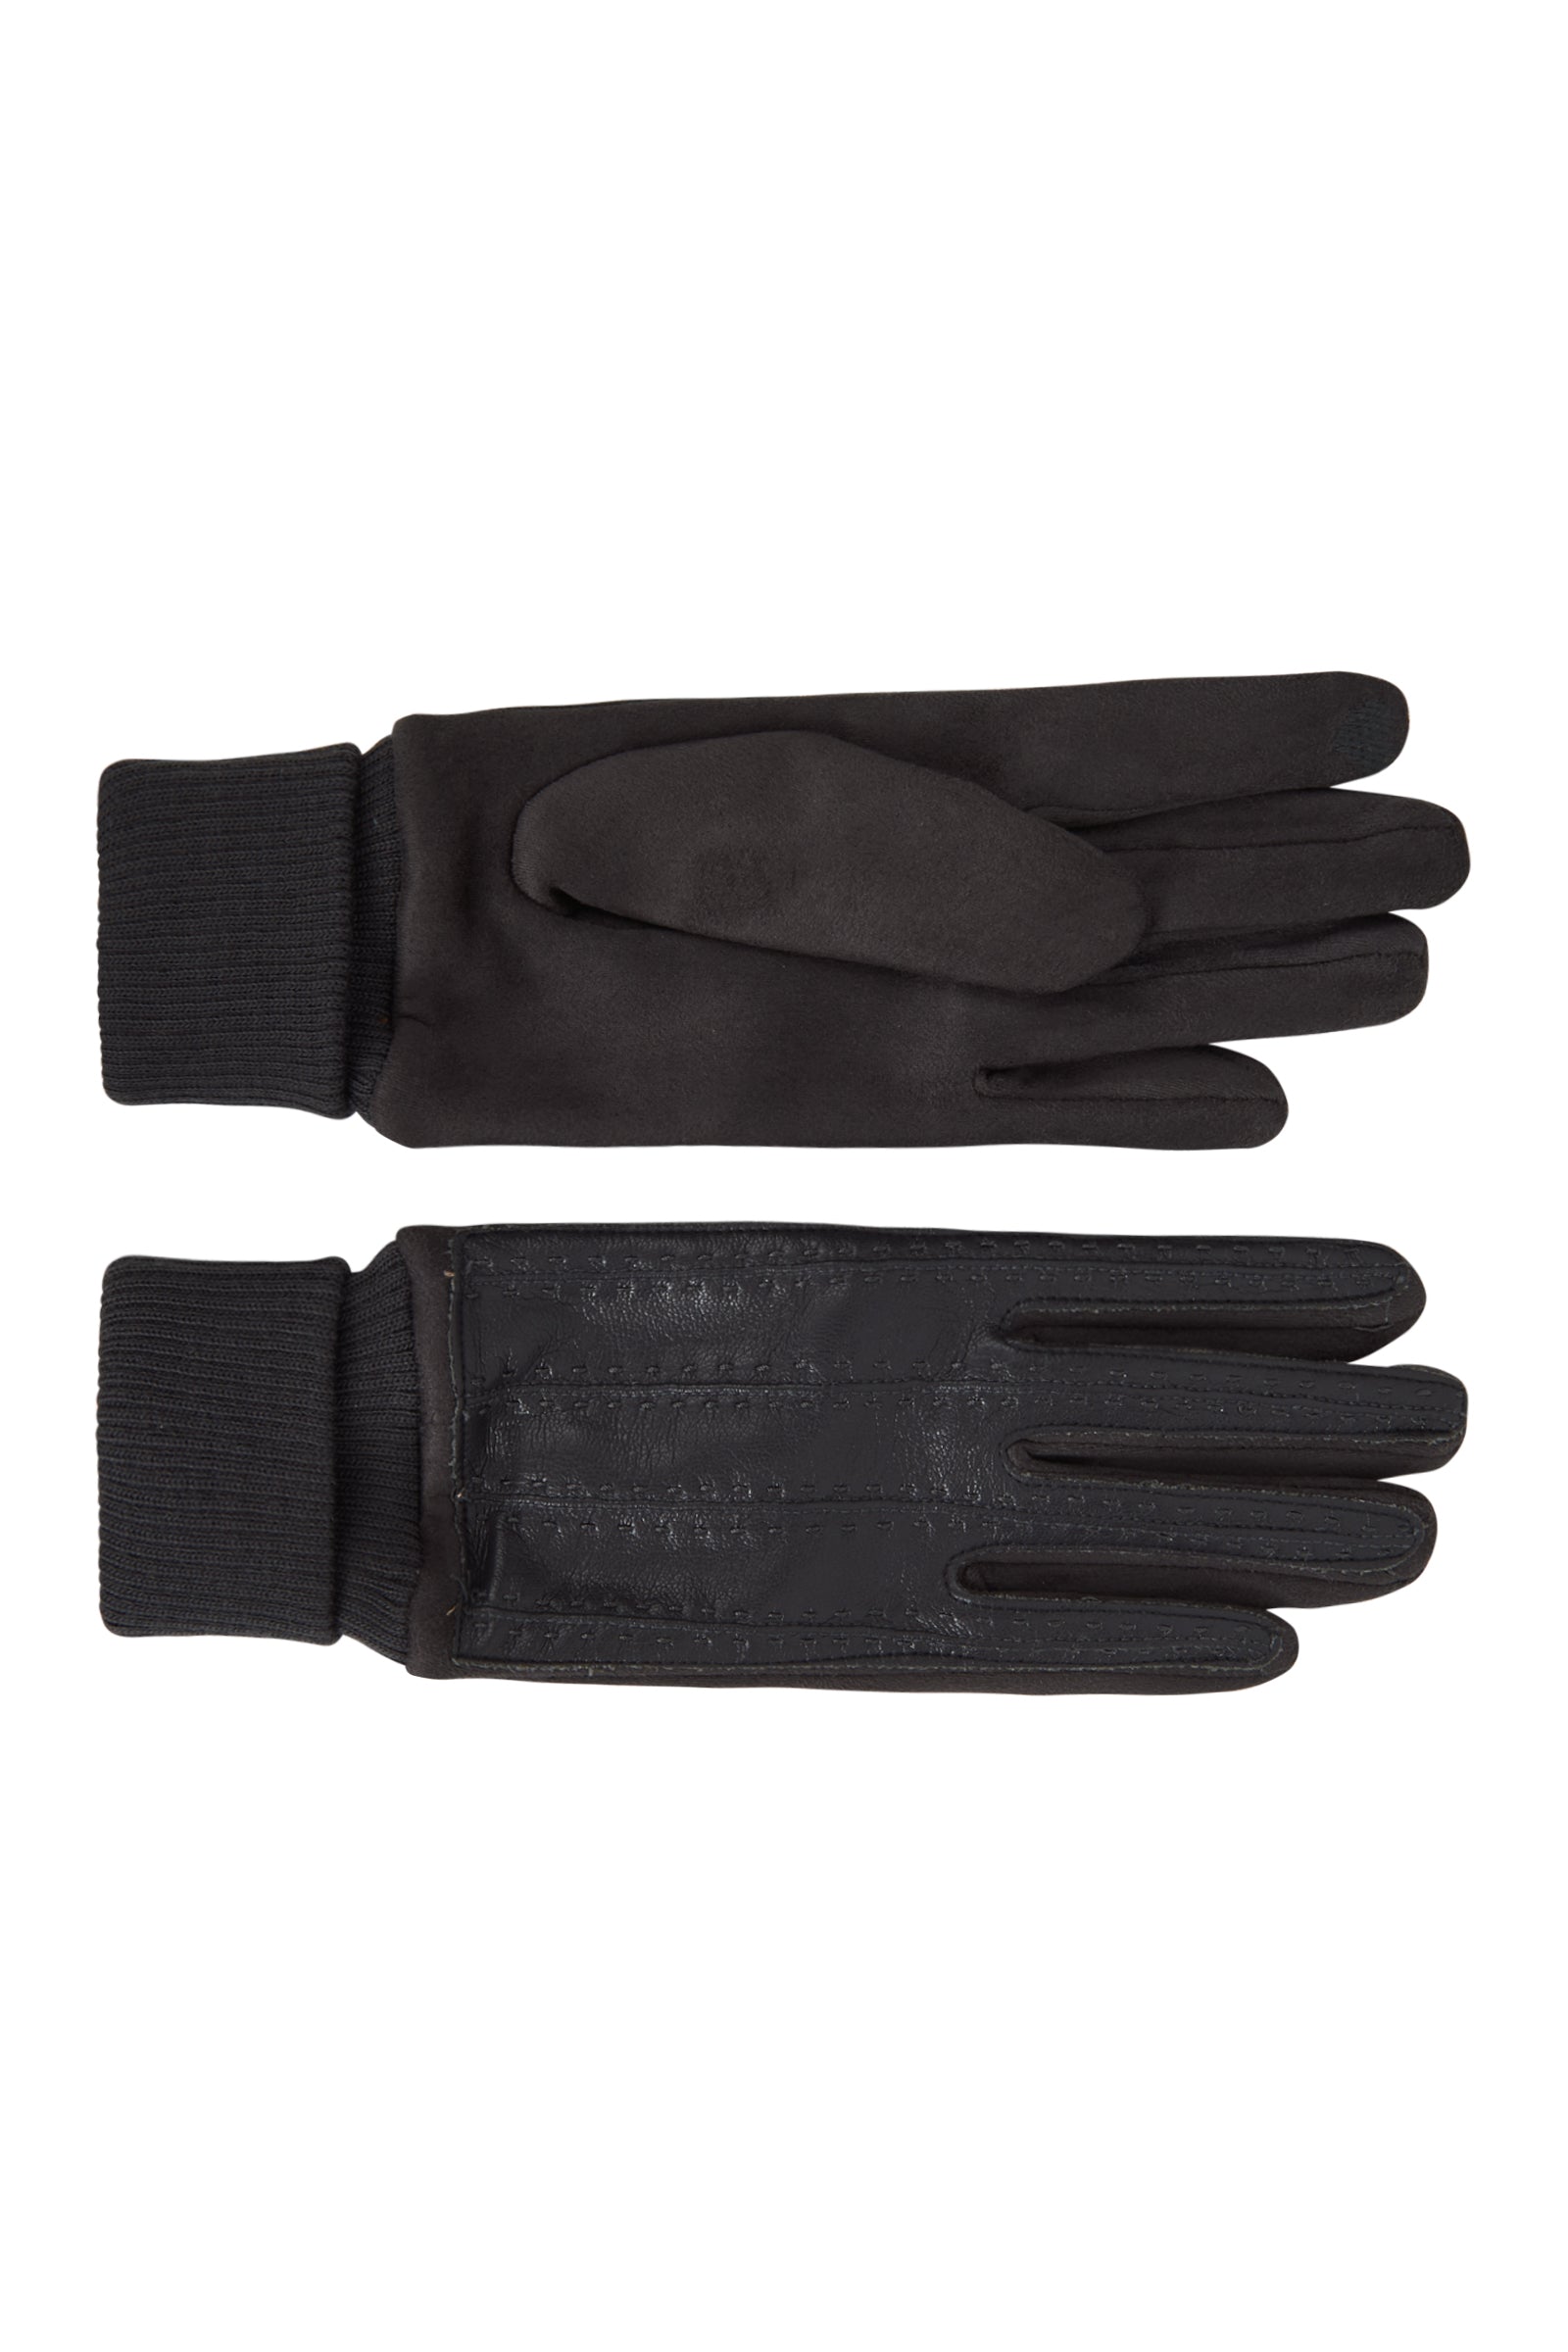 Pilbara Glove - Smoke - eb&ive Glove